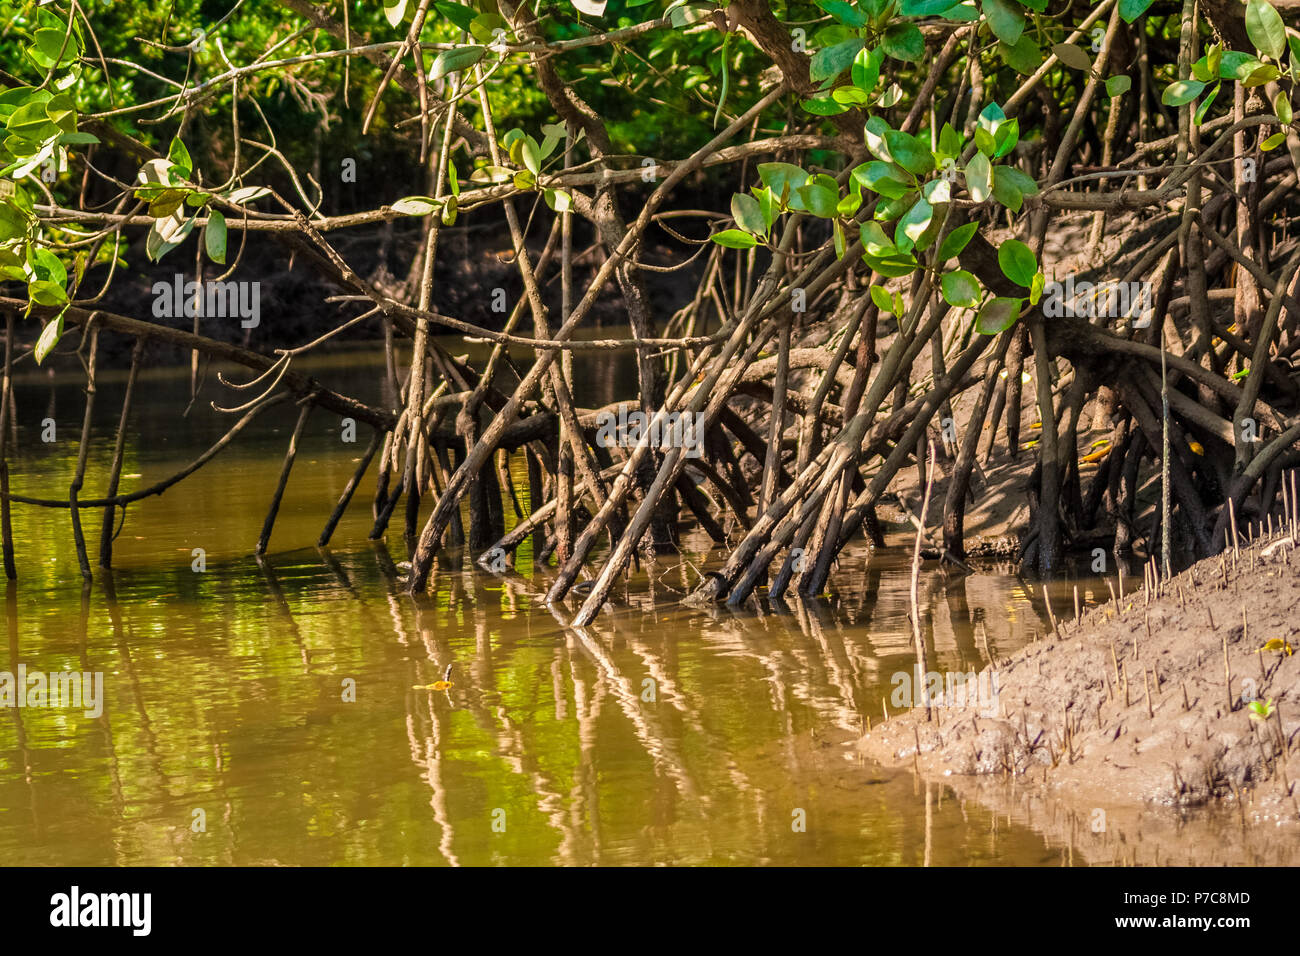 Close-up d'une banque de la rivière de la mangrove avec de nombreuses racines échasses des Rhizophora arbres, couverts de boue et d'eau saumâtre Brown dans le Kilim Geoforest... Banque D'Images